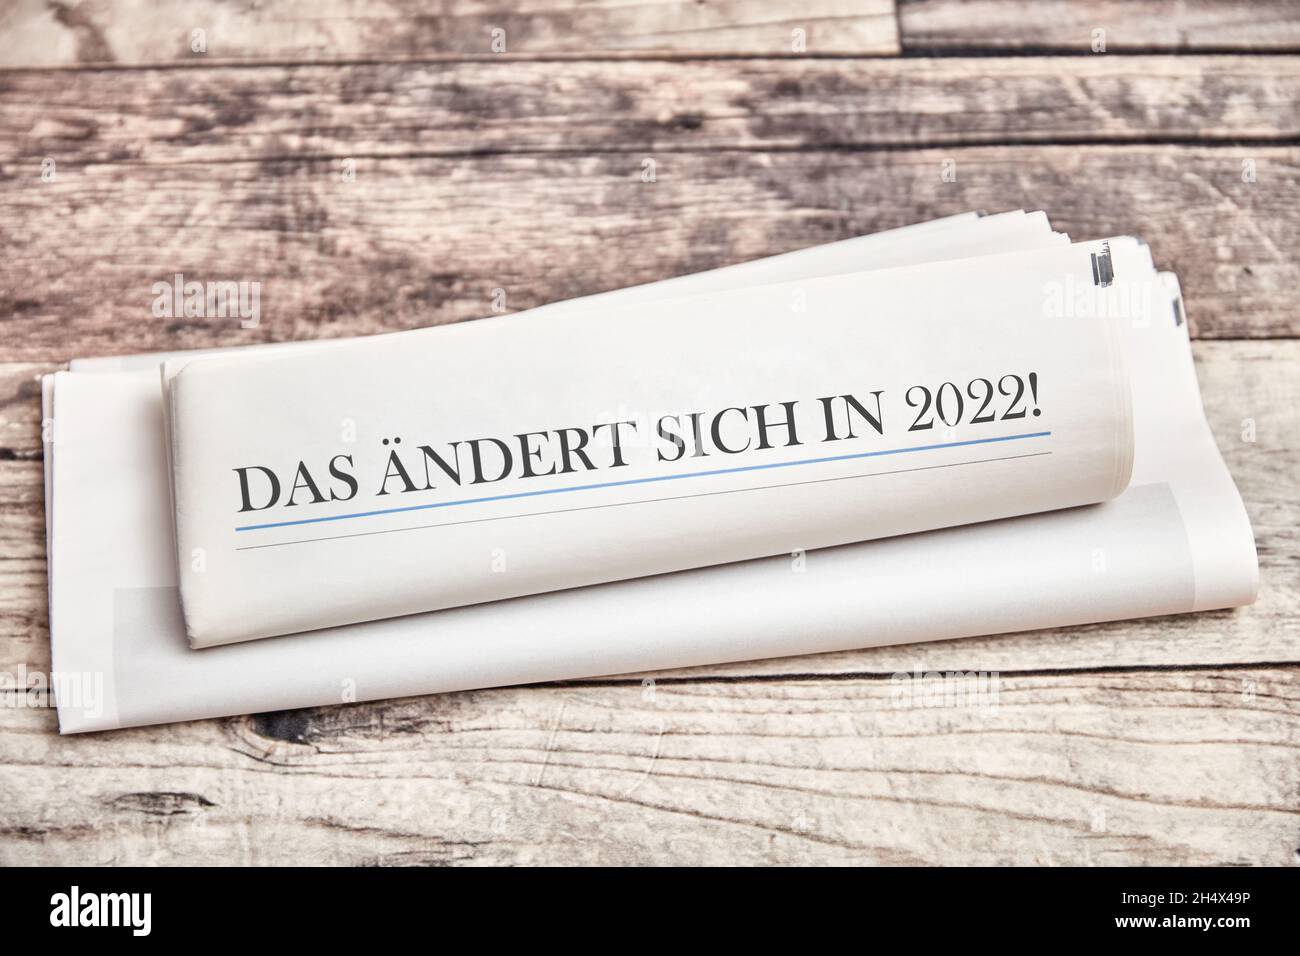 DAS ändert sich en 2022!(Allemand pour: Cela changera en 2022)sur la première page d'un journal plié Banque D'Images